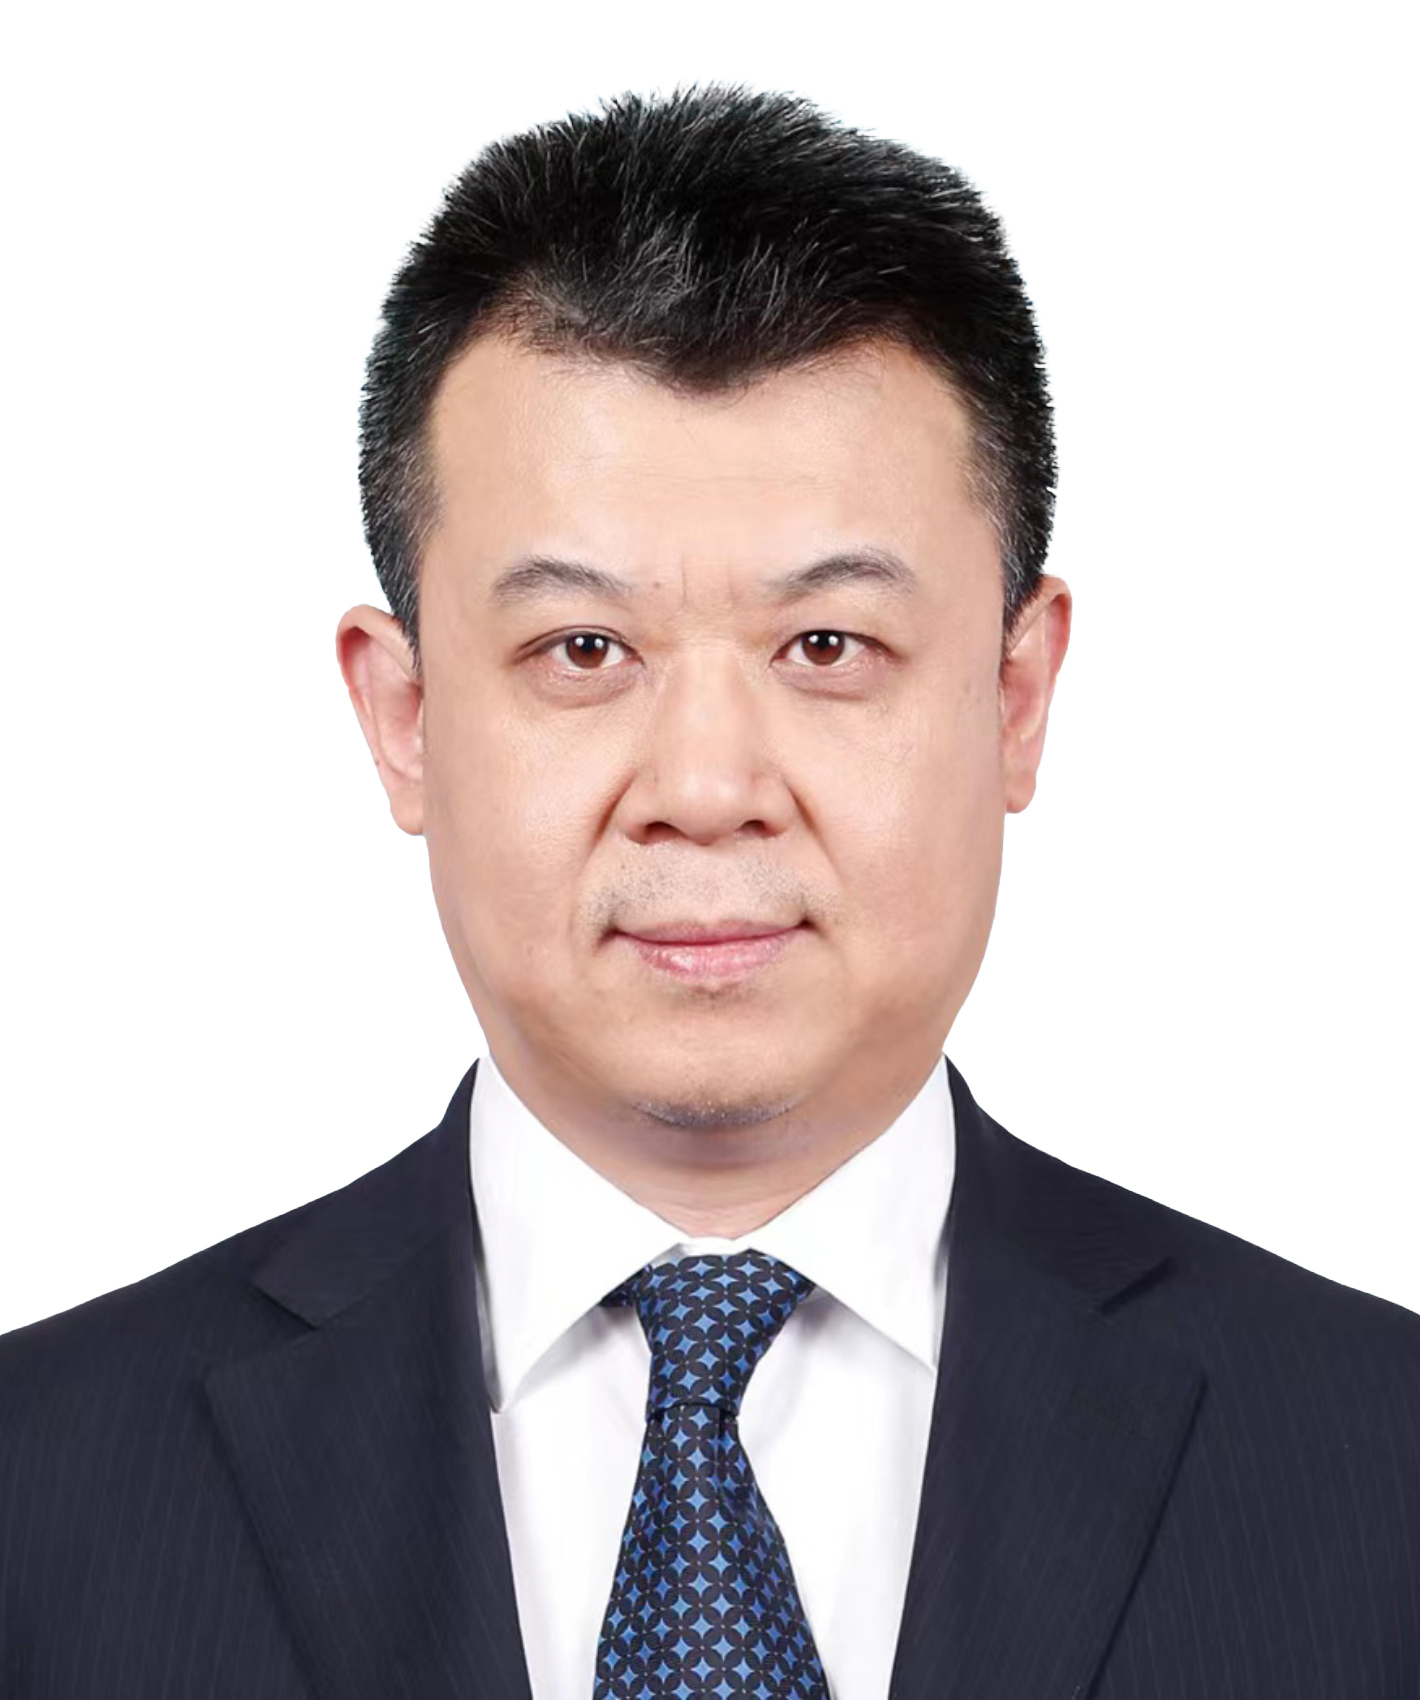 王志恒出任农业银行党委副书记 目前该行行长职位暂时空缺